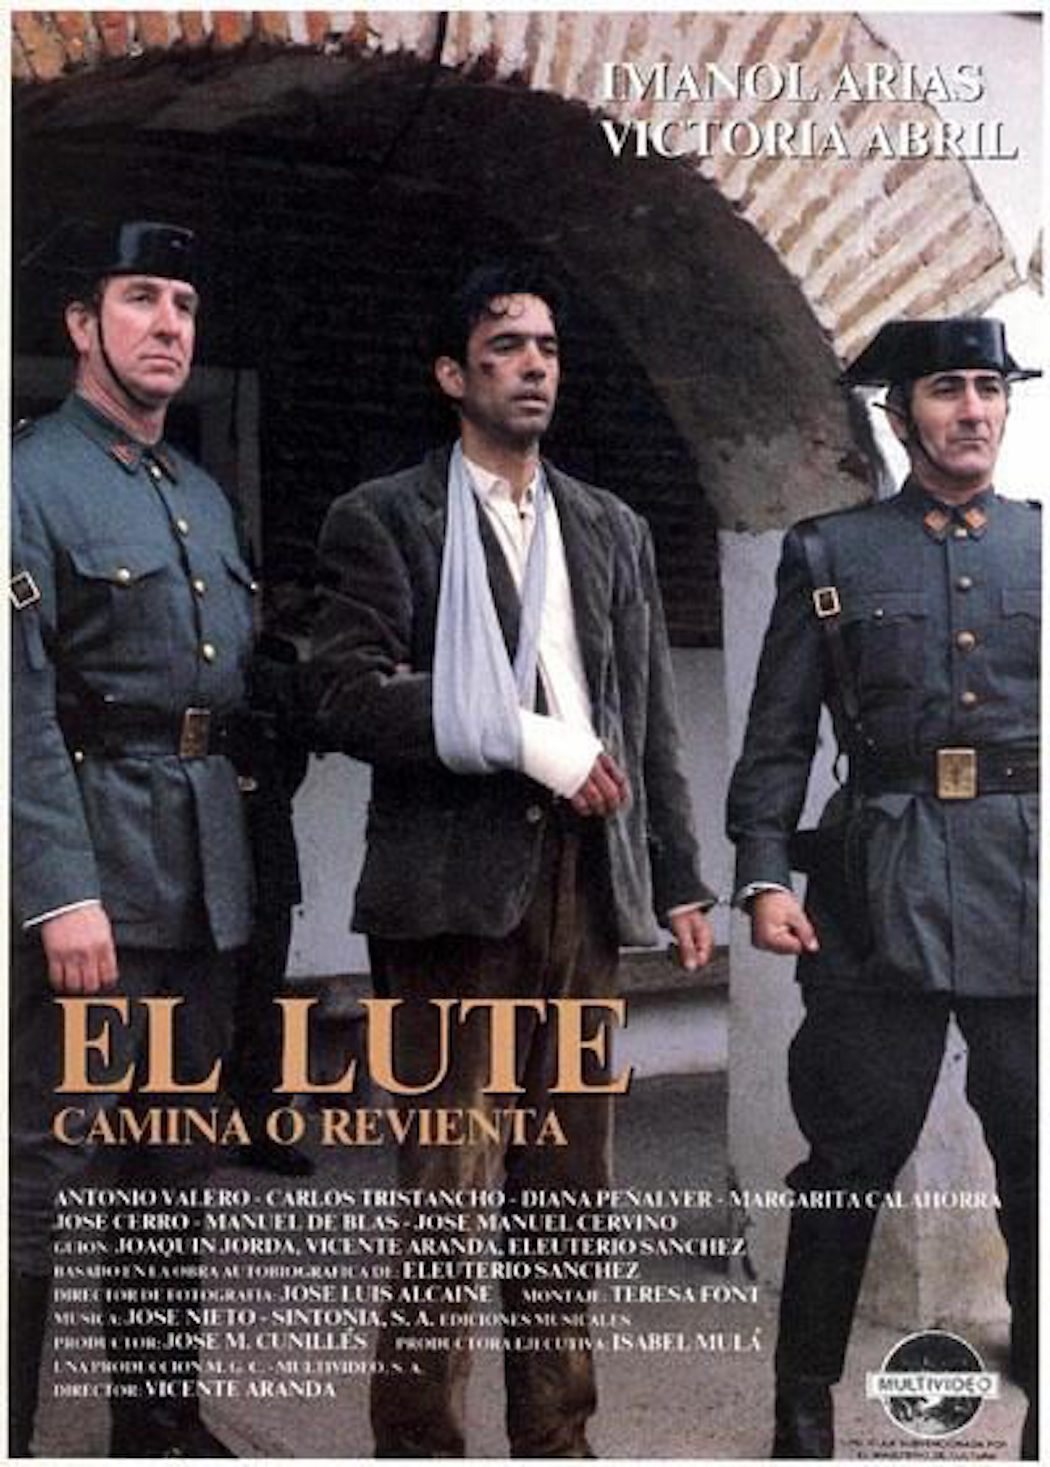 'El Lute (camina o revienta)' (Vicente Aranda, 1987)